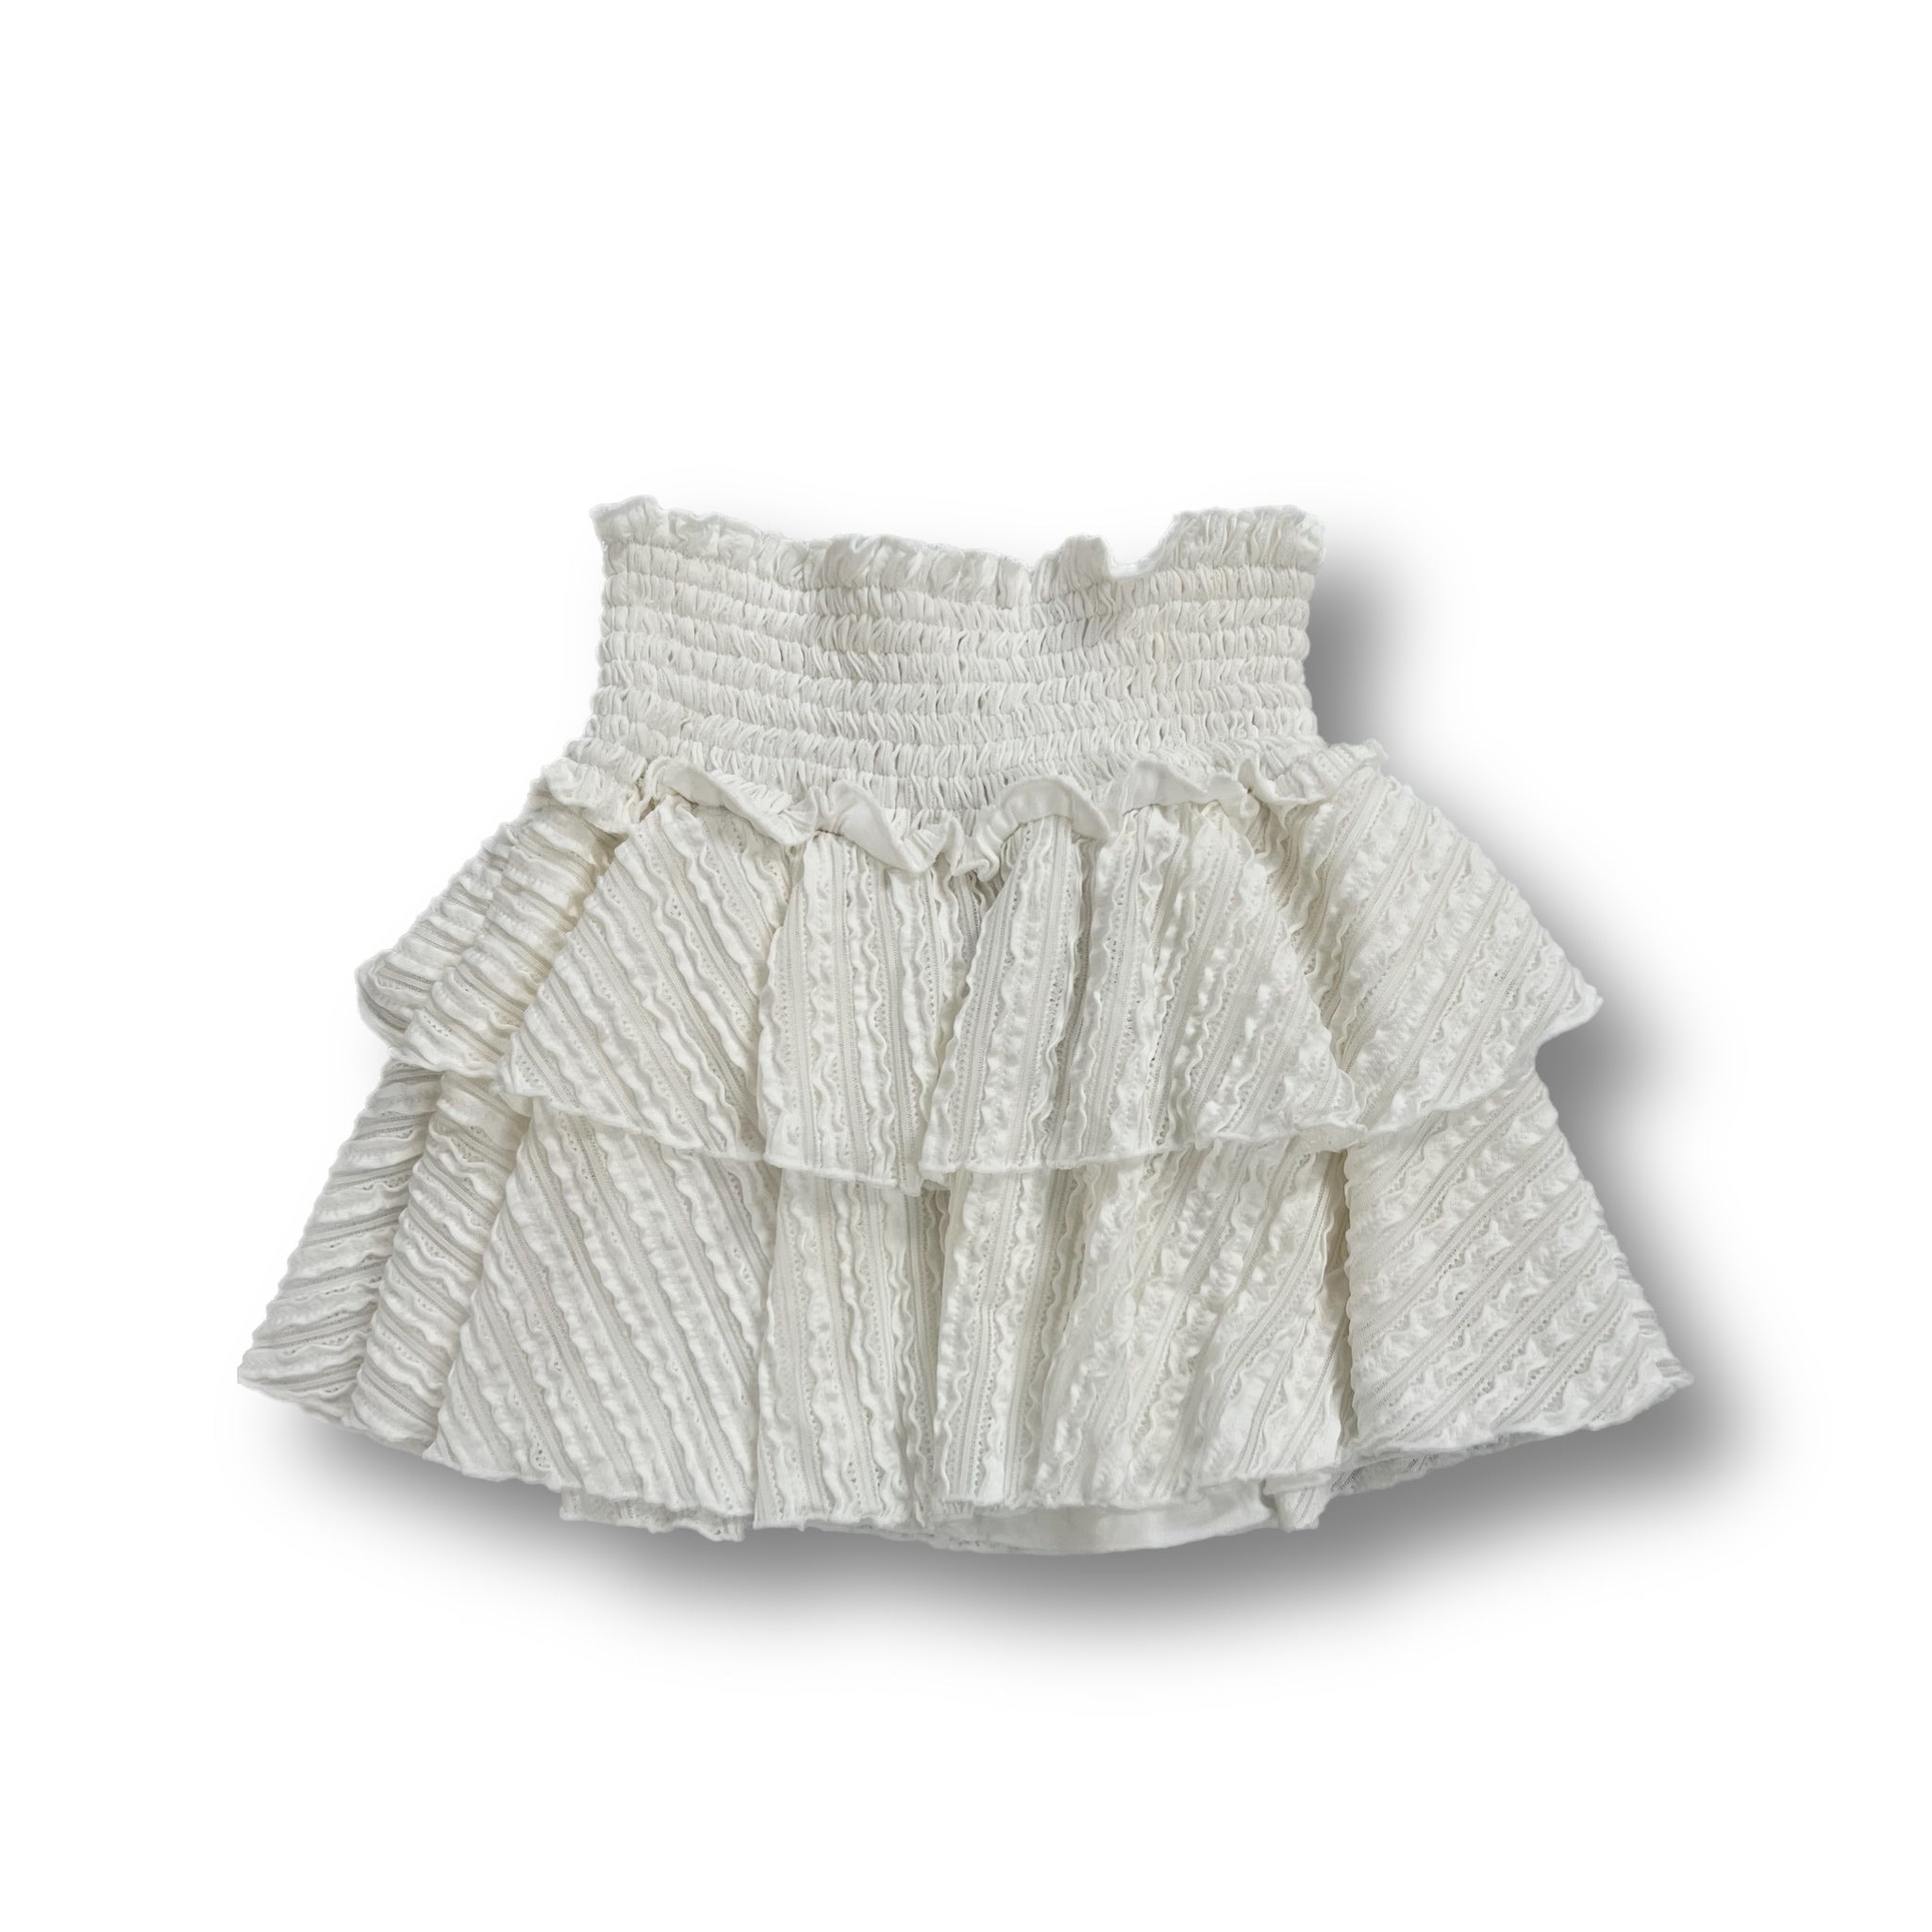 UPKS28ST Stripe Knit Short Skirt